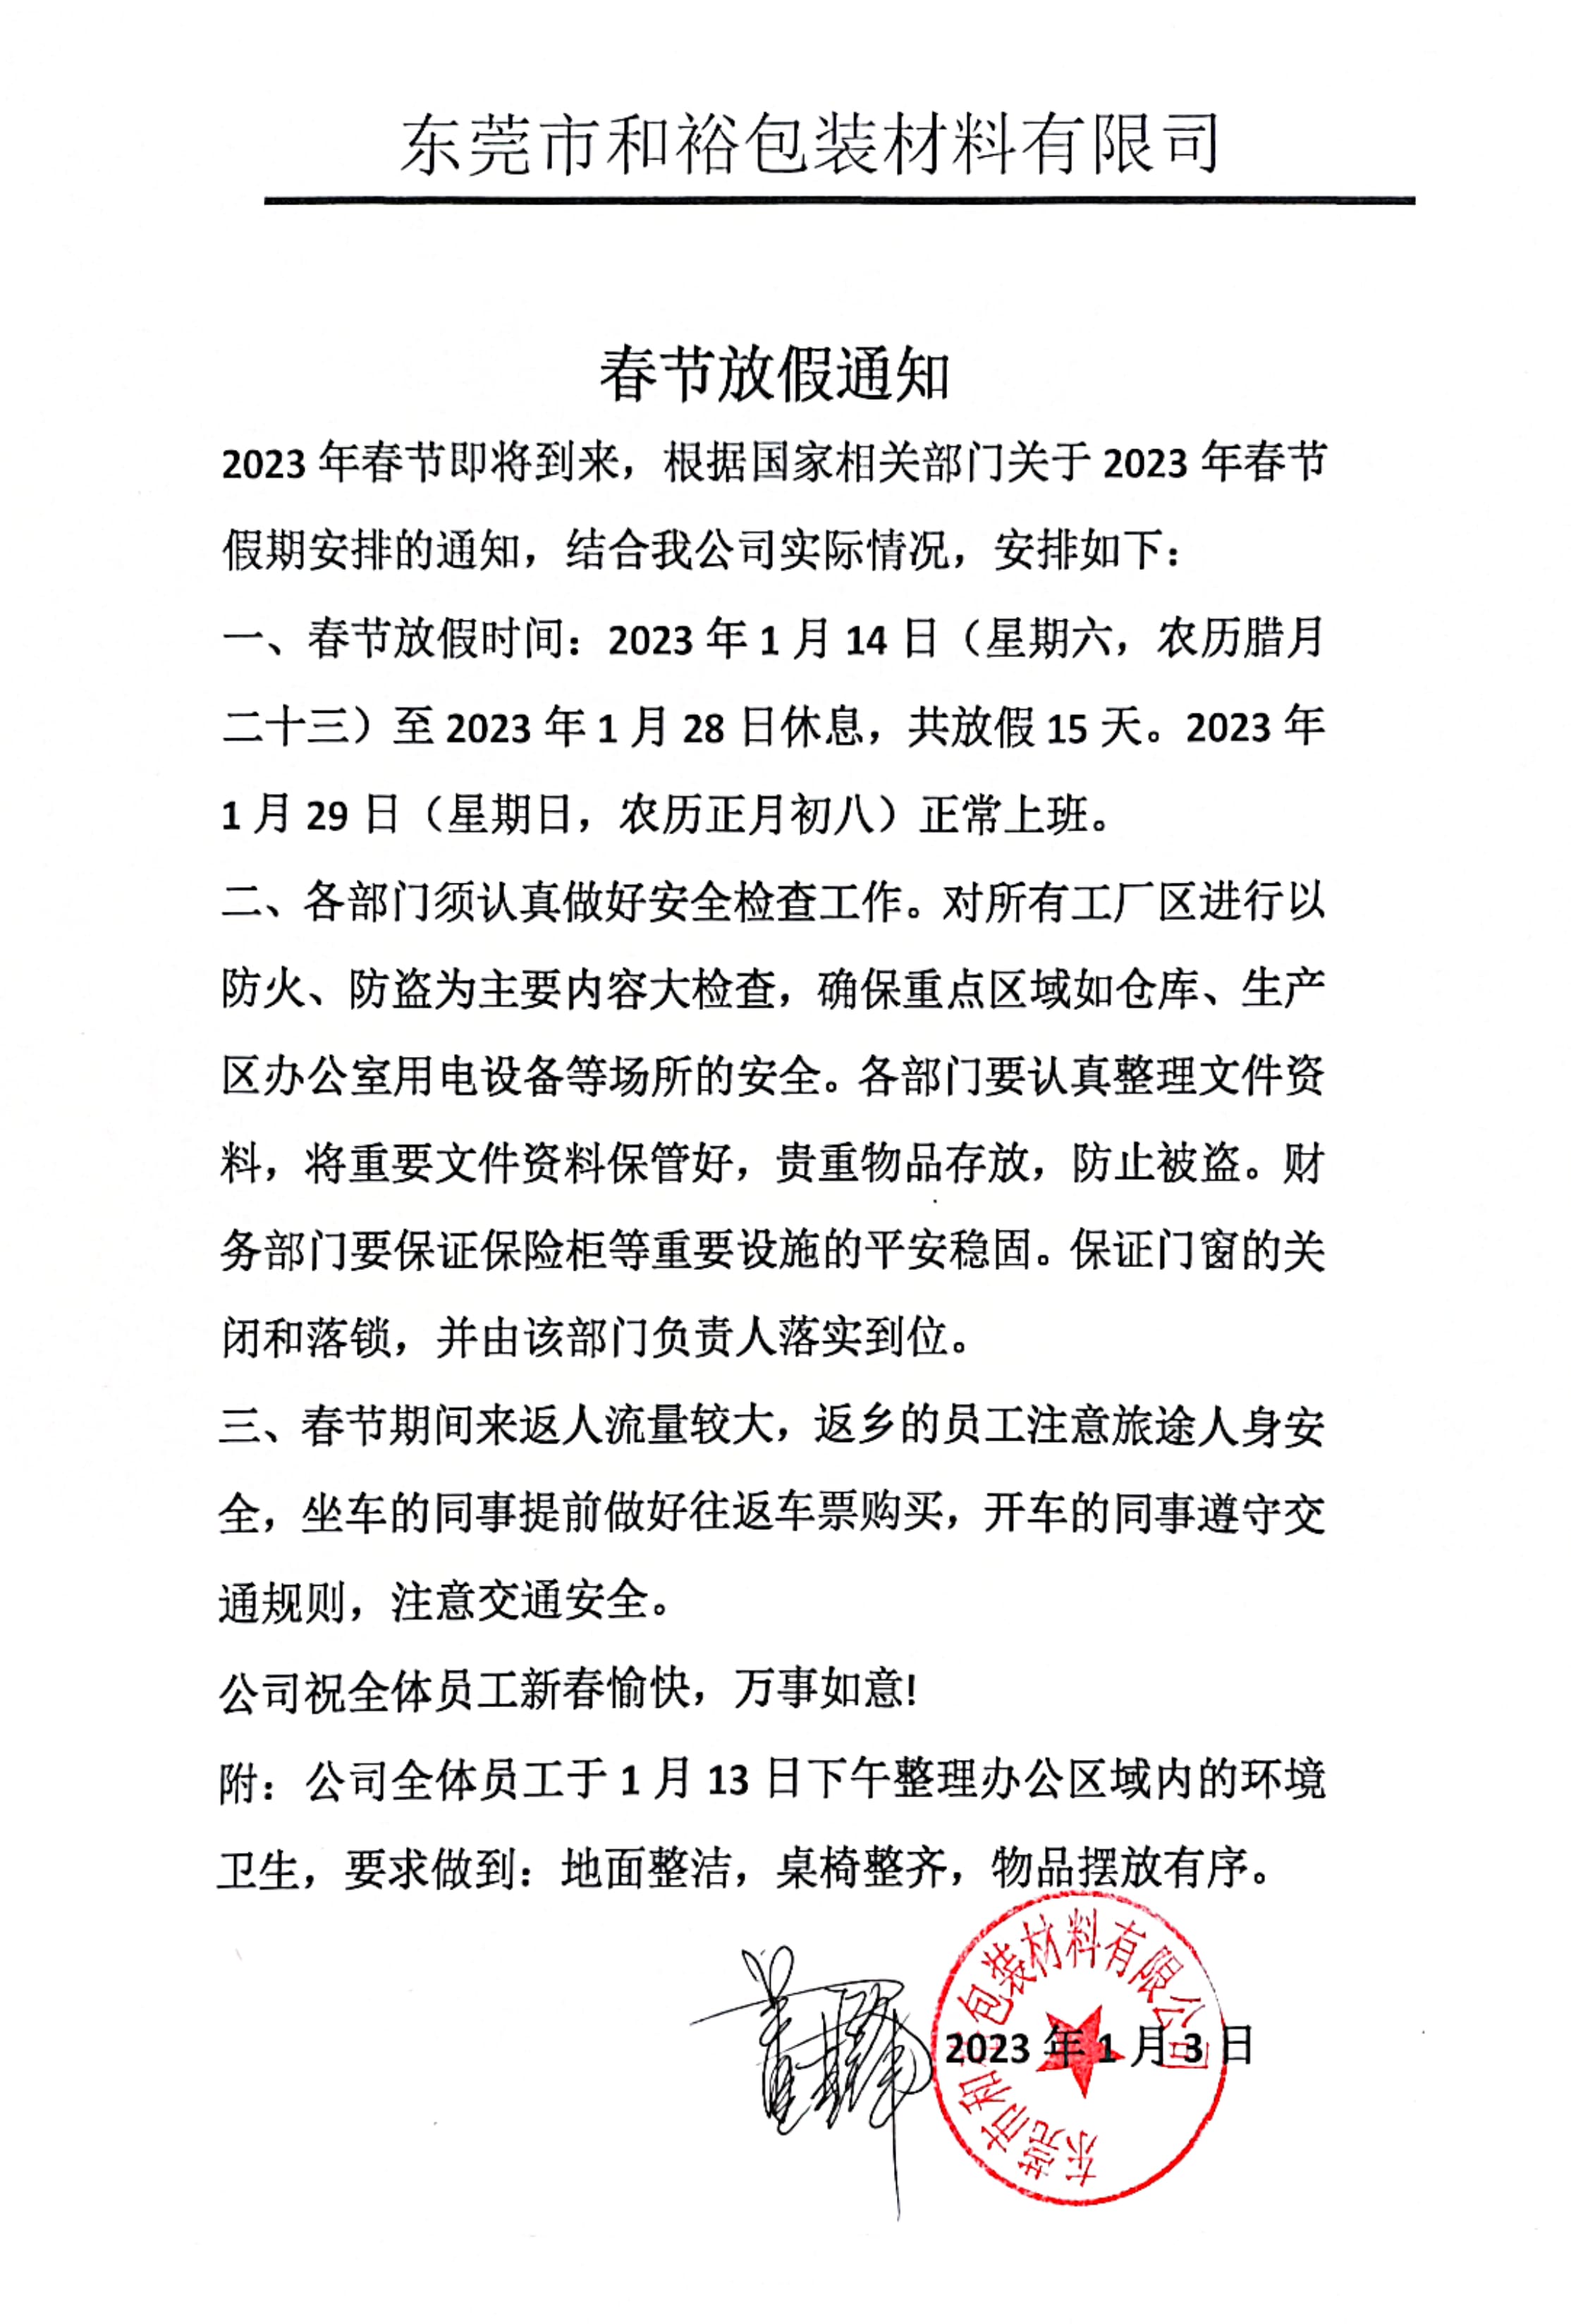 荣昌区2023年和裕包装春节放假通知